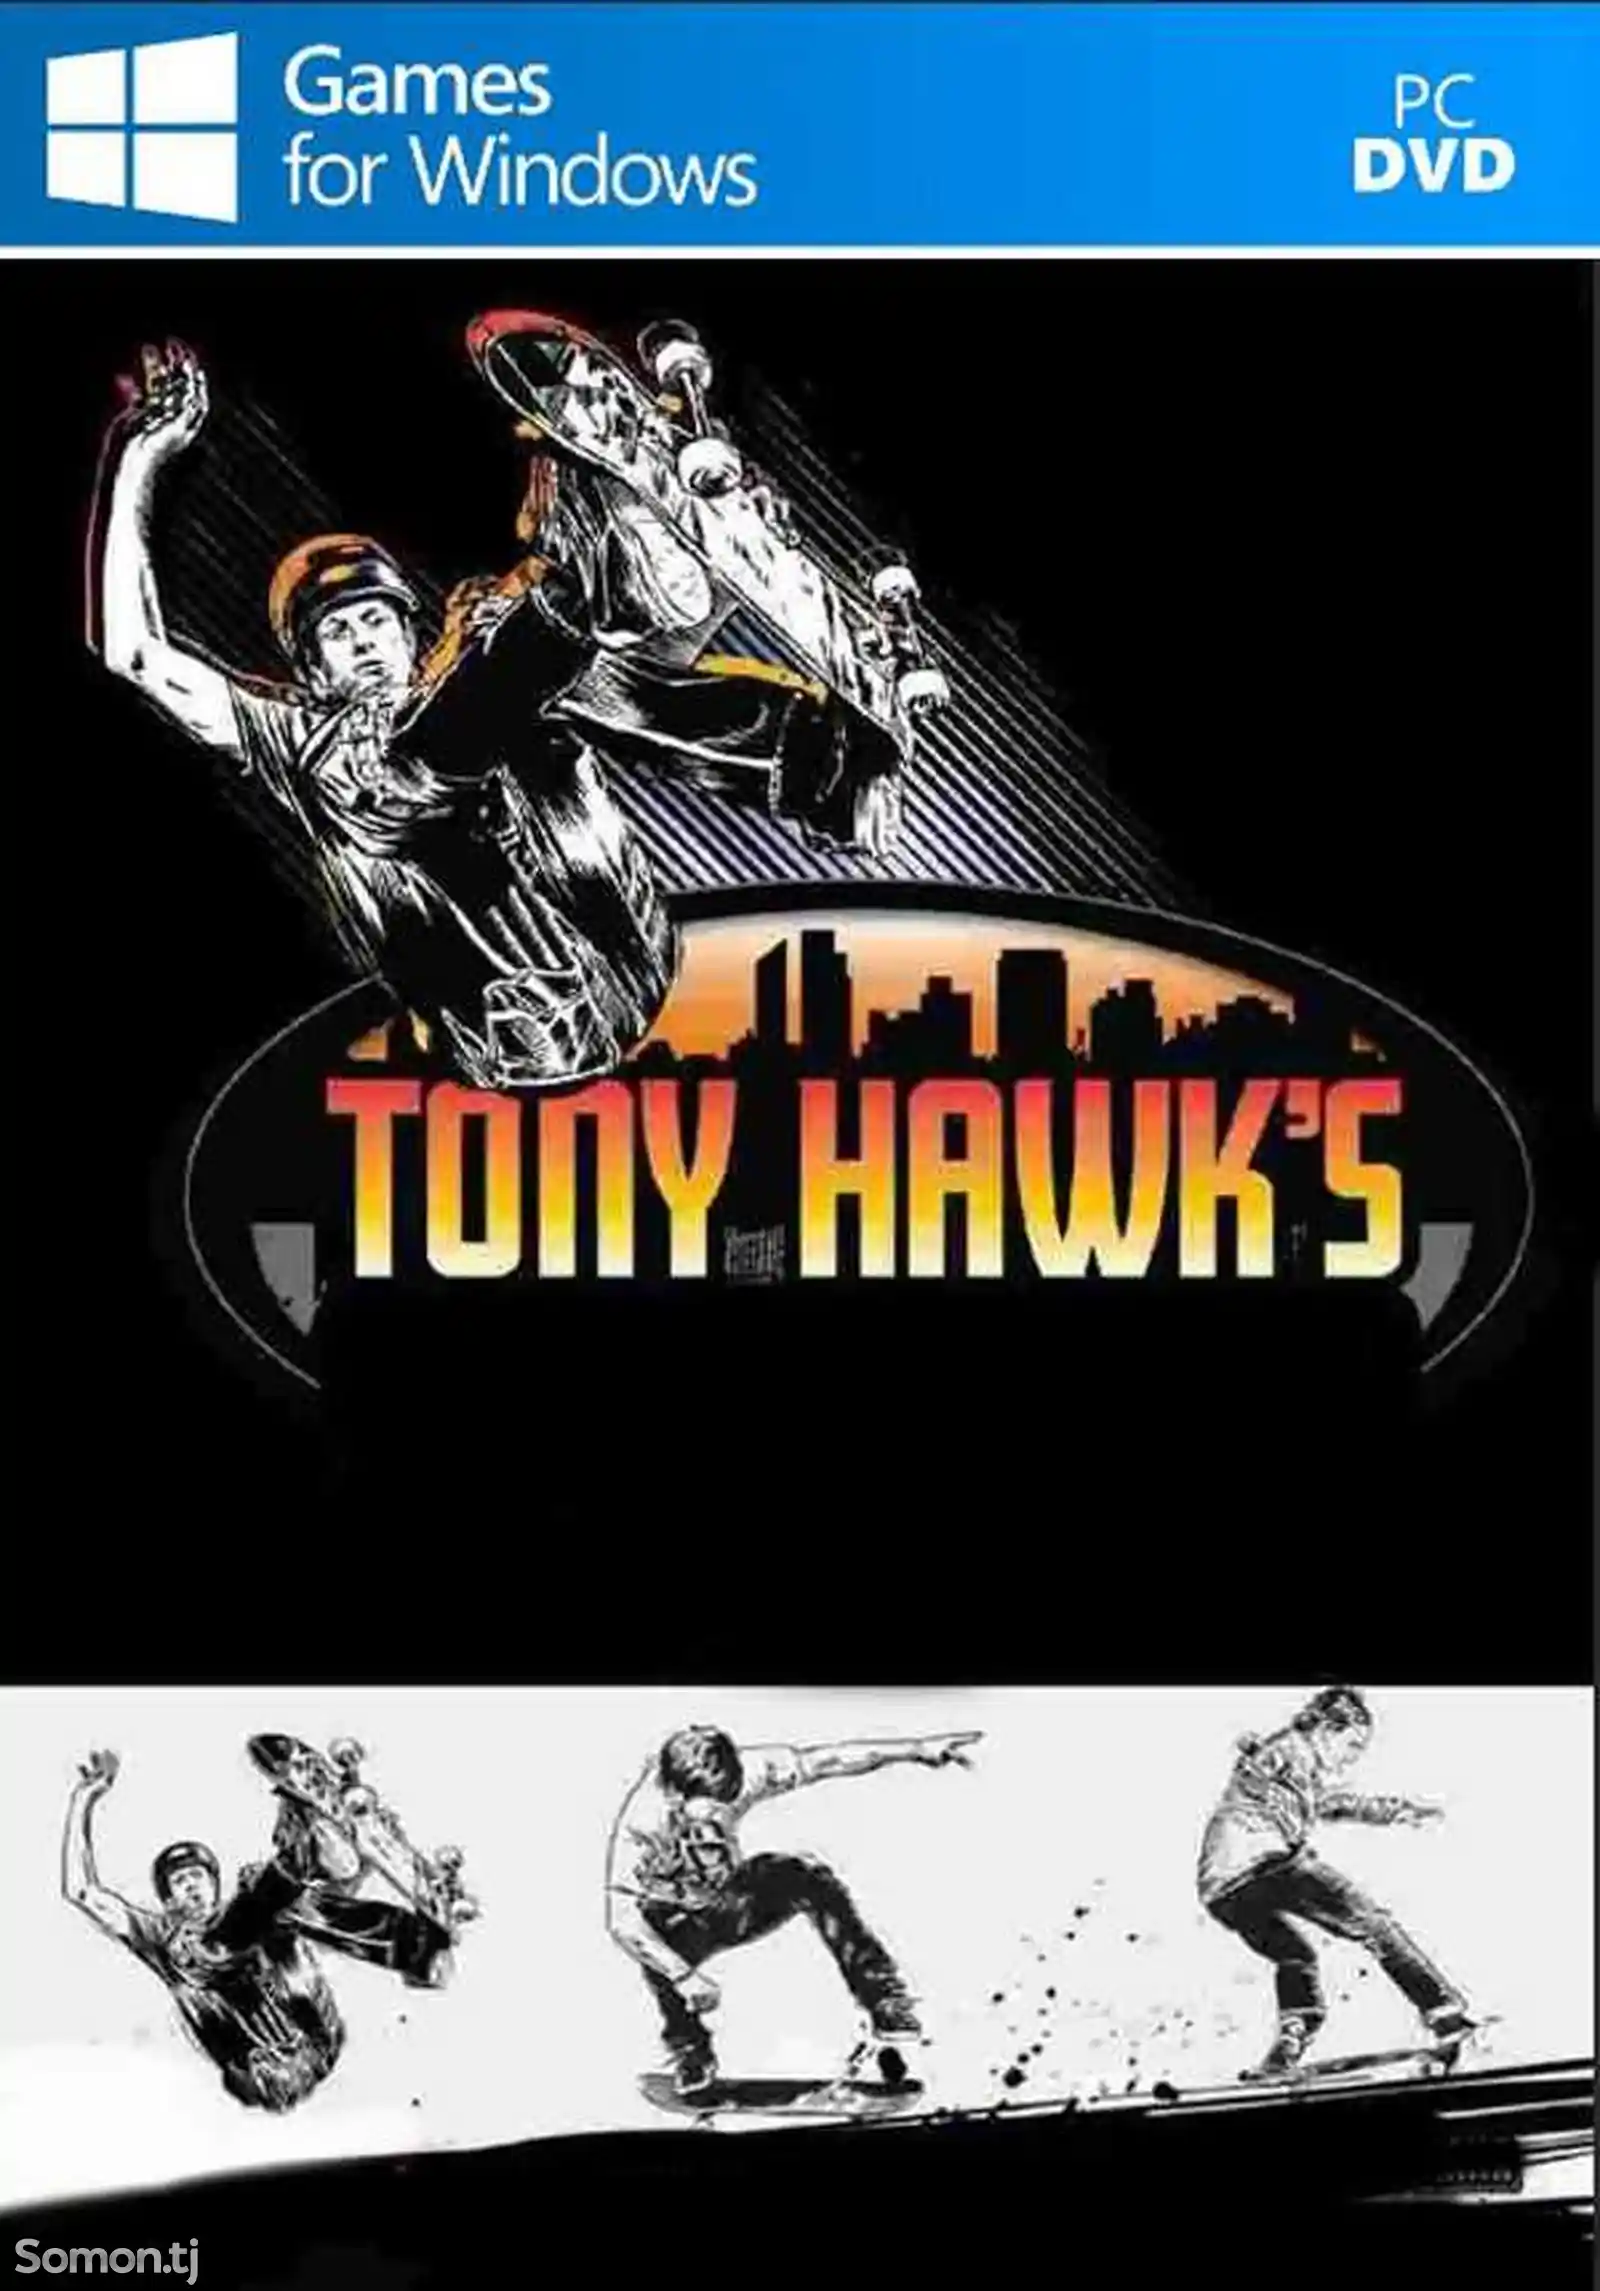 Игра Tony hawks для компьютера-пк-pc-1